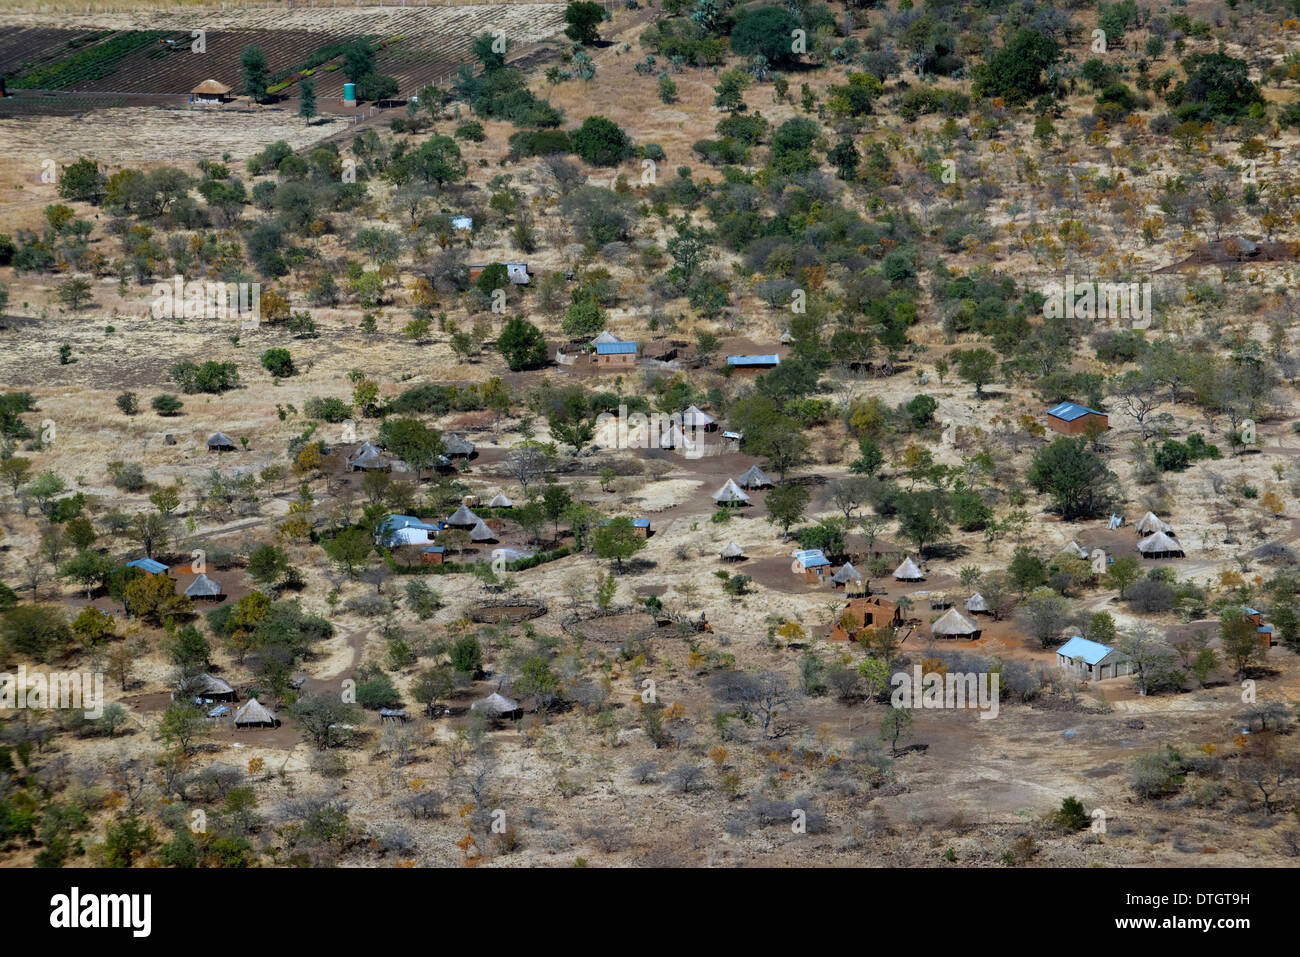 Luftaufnahmen des Mukuni Village. Sambia. Mukuni, 9,6 km (6,0 km) südöstlich des heutigen Livingstone, war die größte Stockfoto